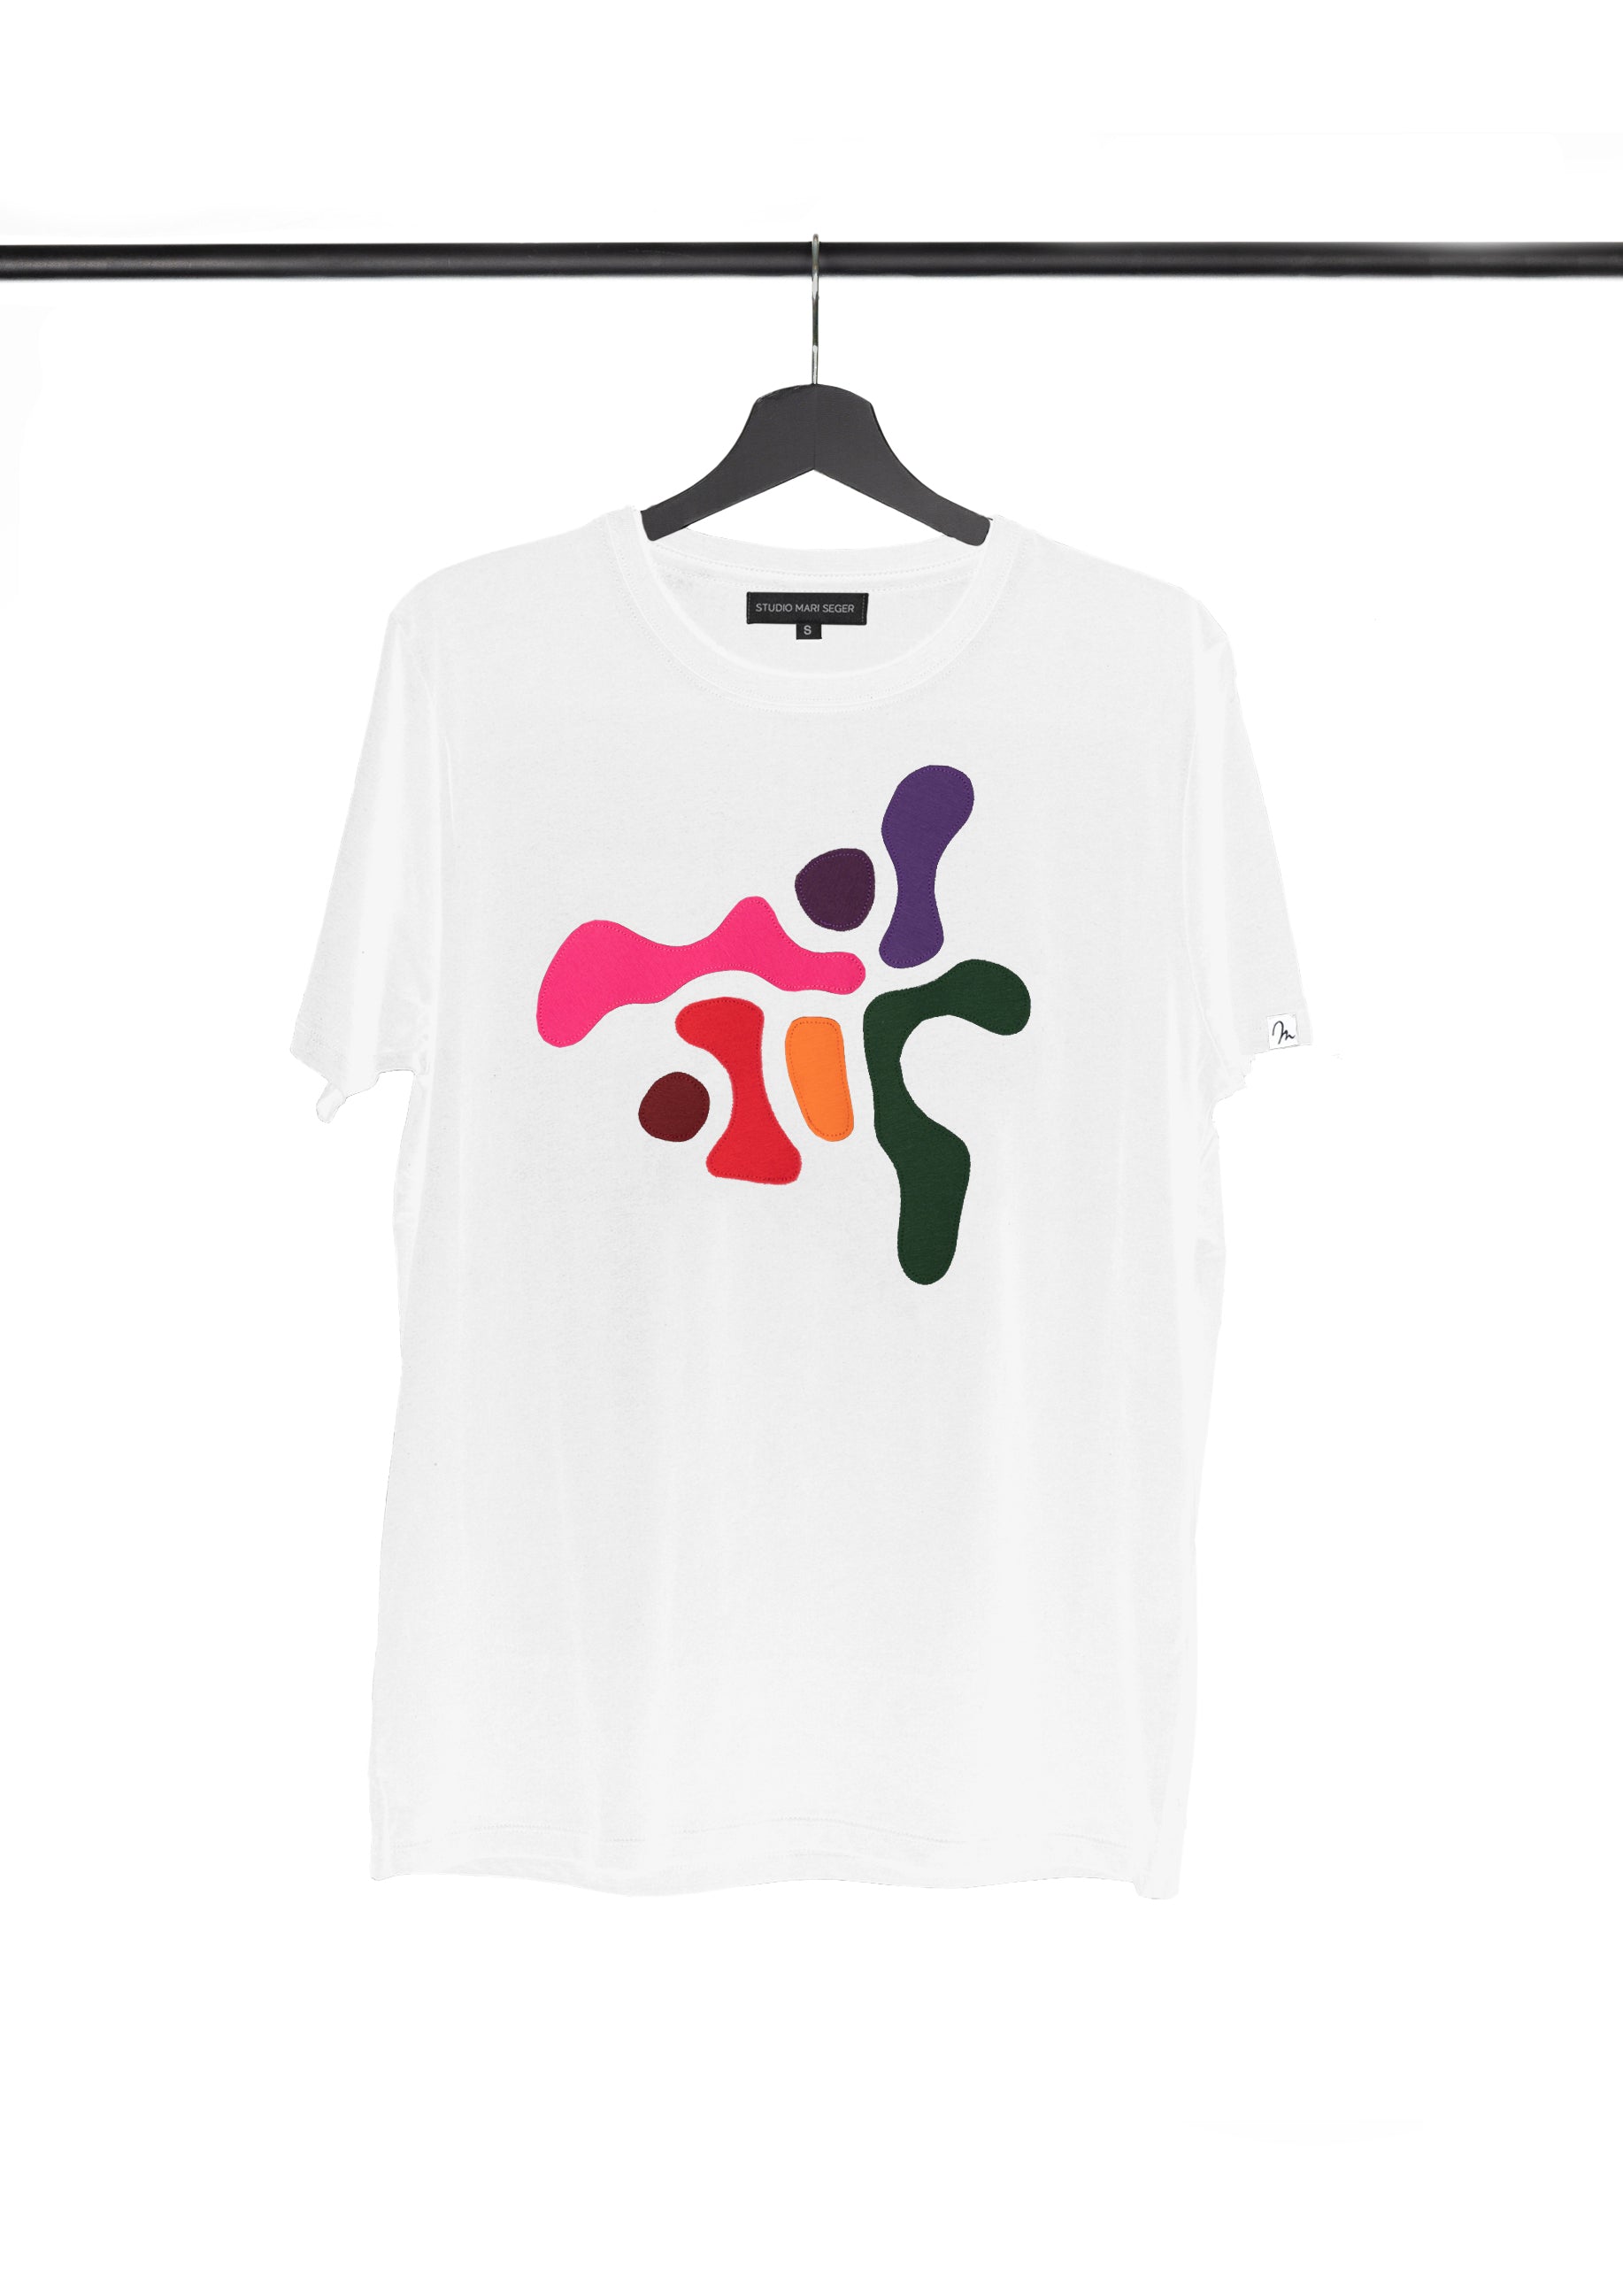 AYAKO / t-shirt (black/white)